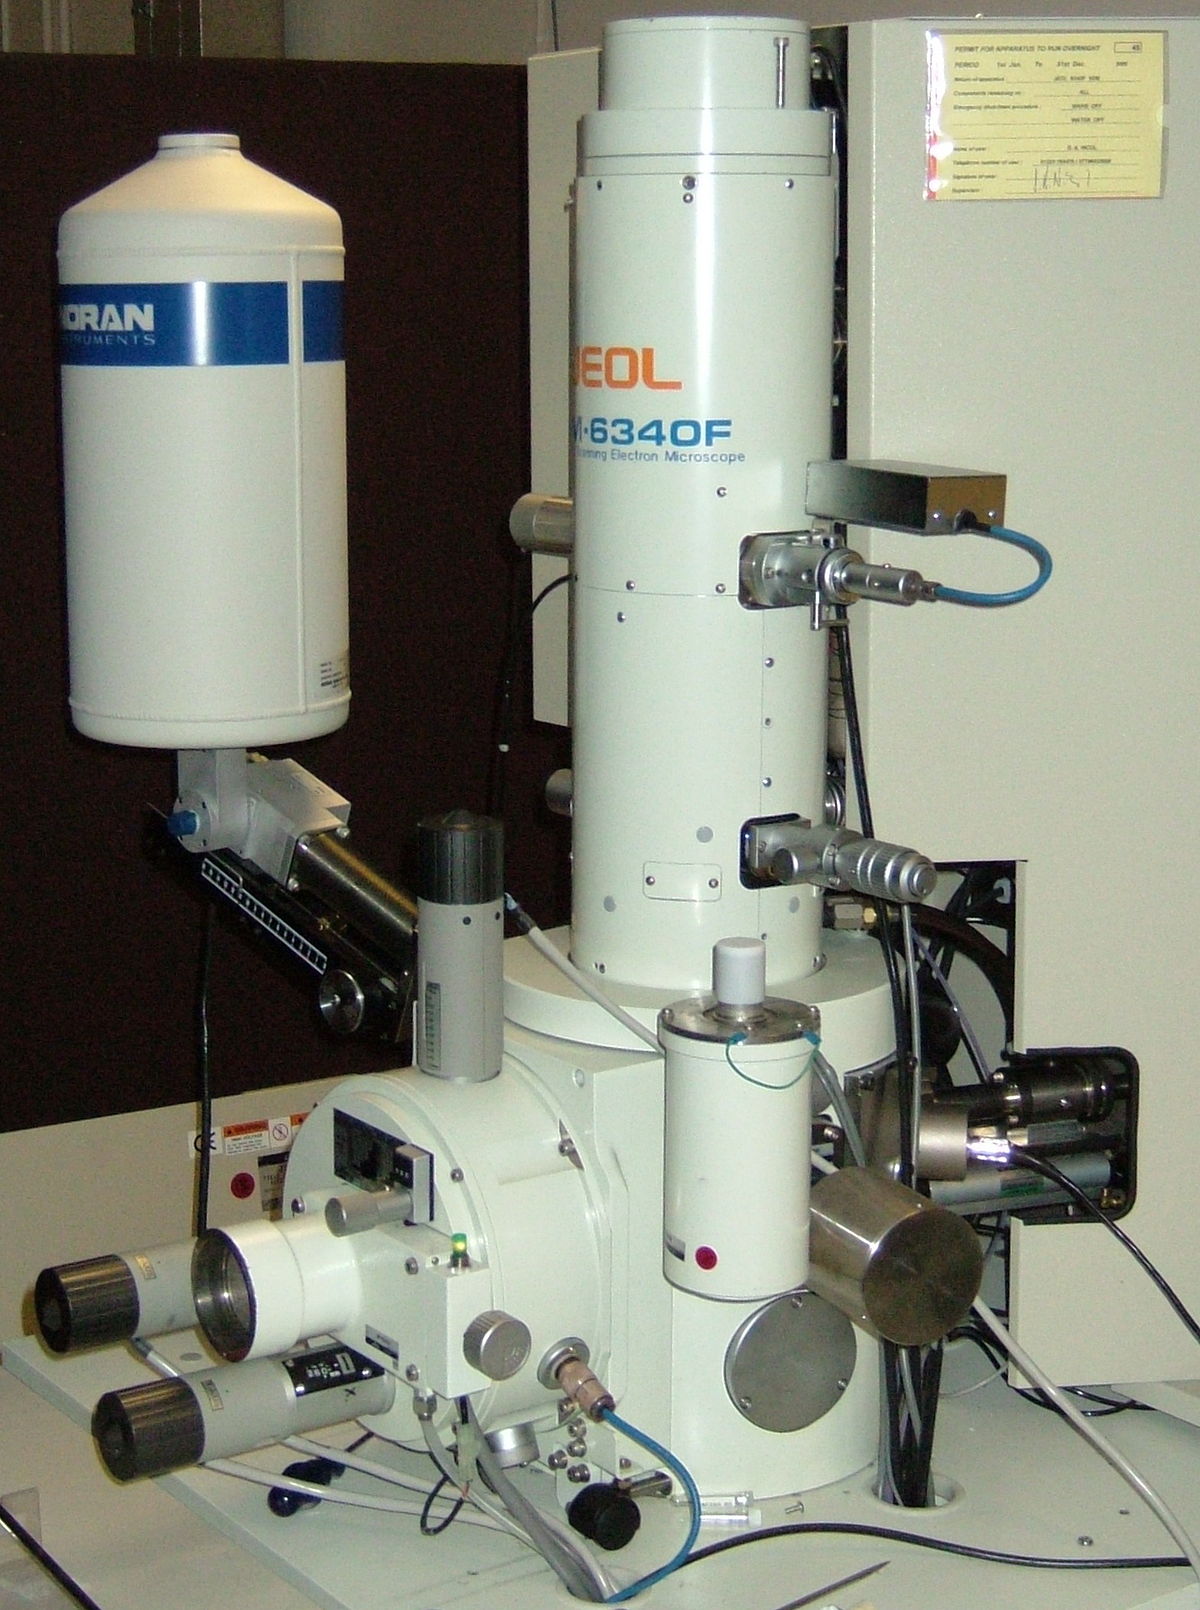 Principe du microscope électronique